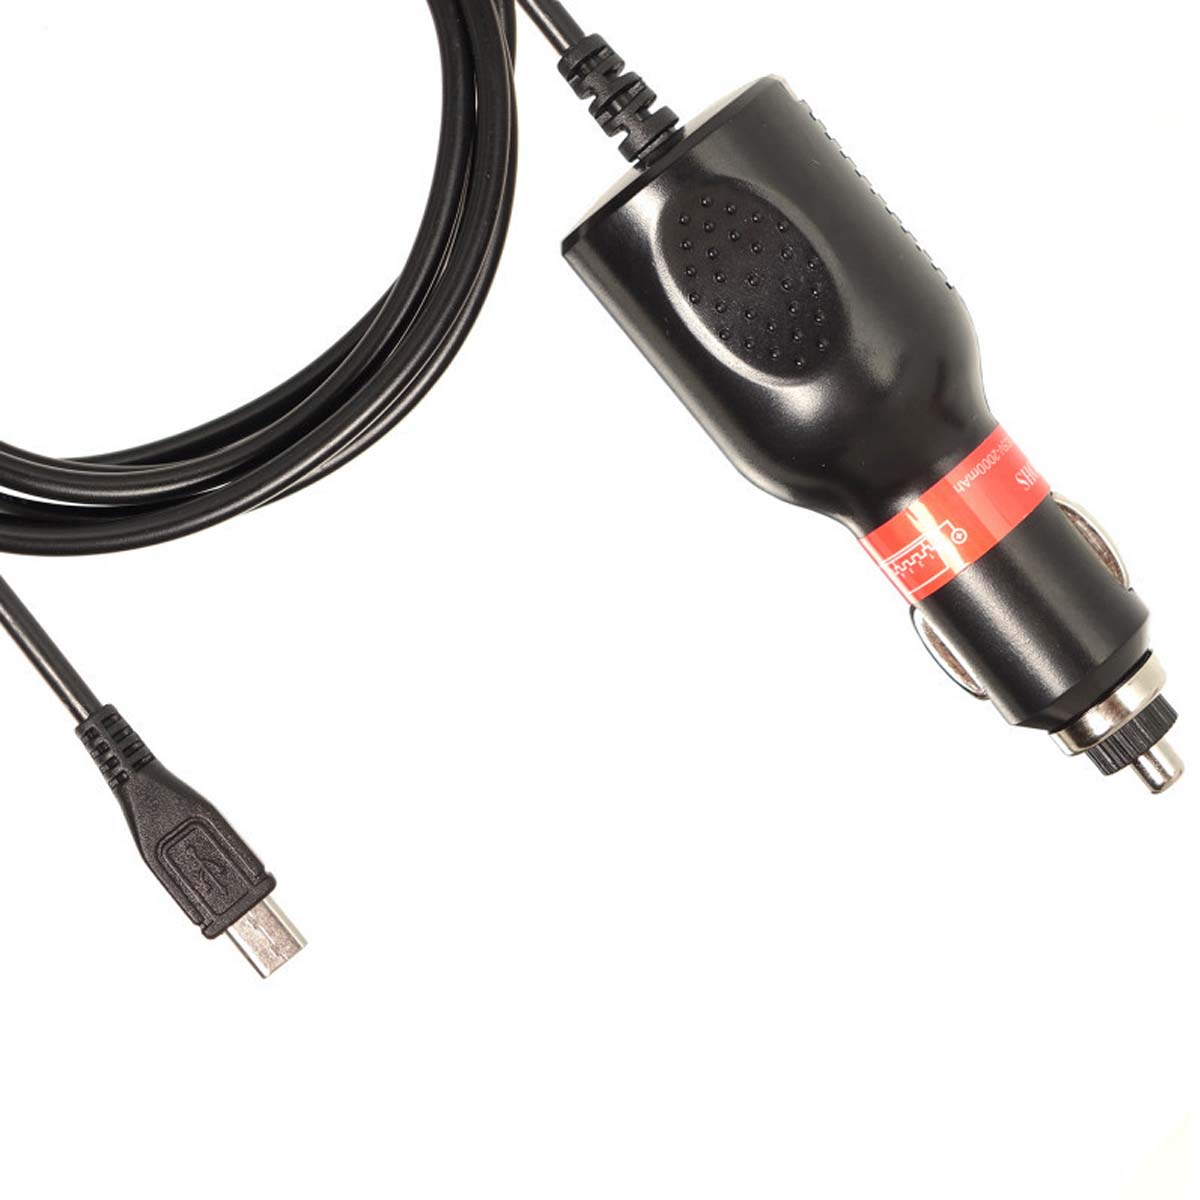 АЗУ (Автомобильное зарядное устройство) LP1 V8 с кабелем Micro USB, длина 3.5 метра, цвет черный